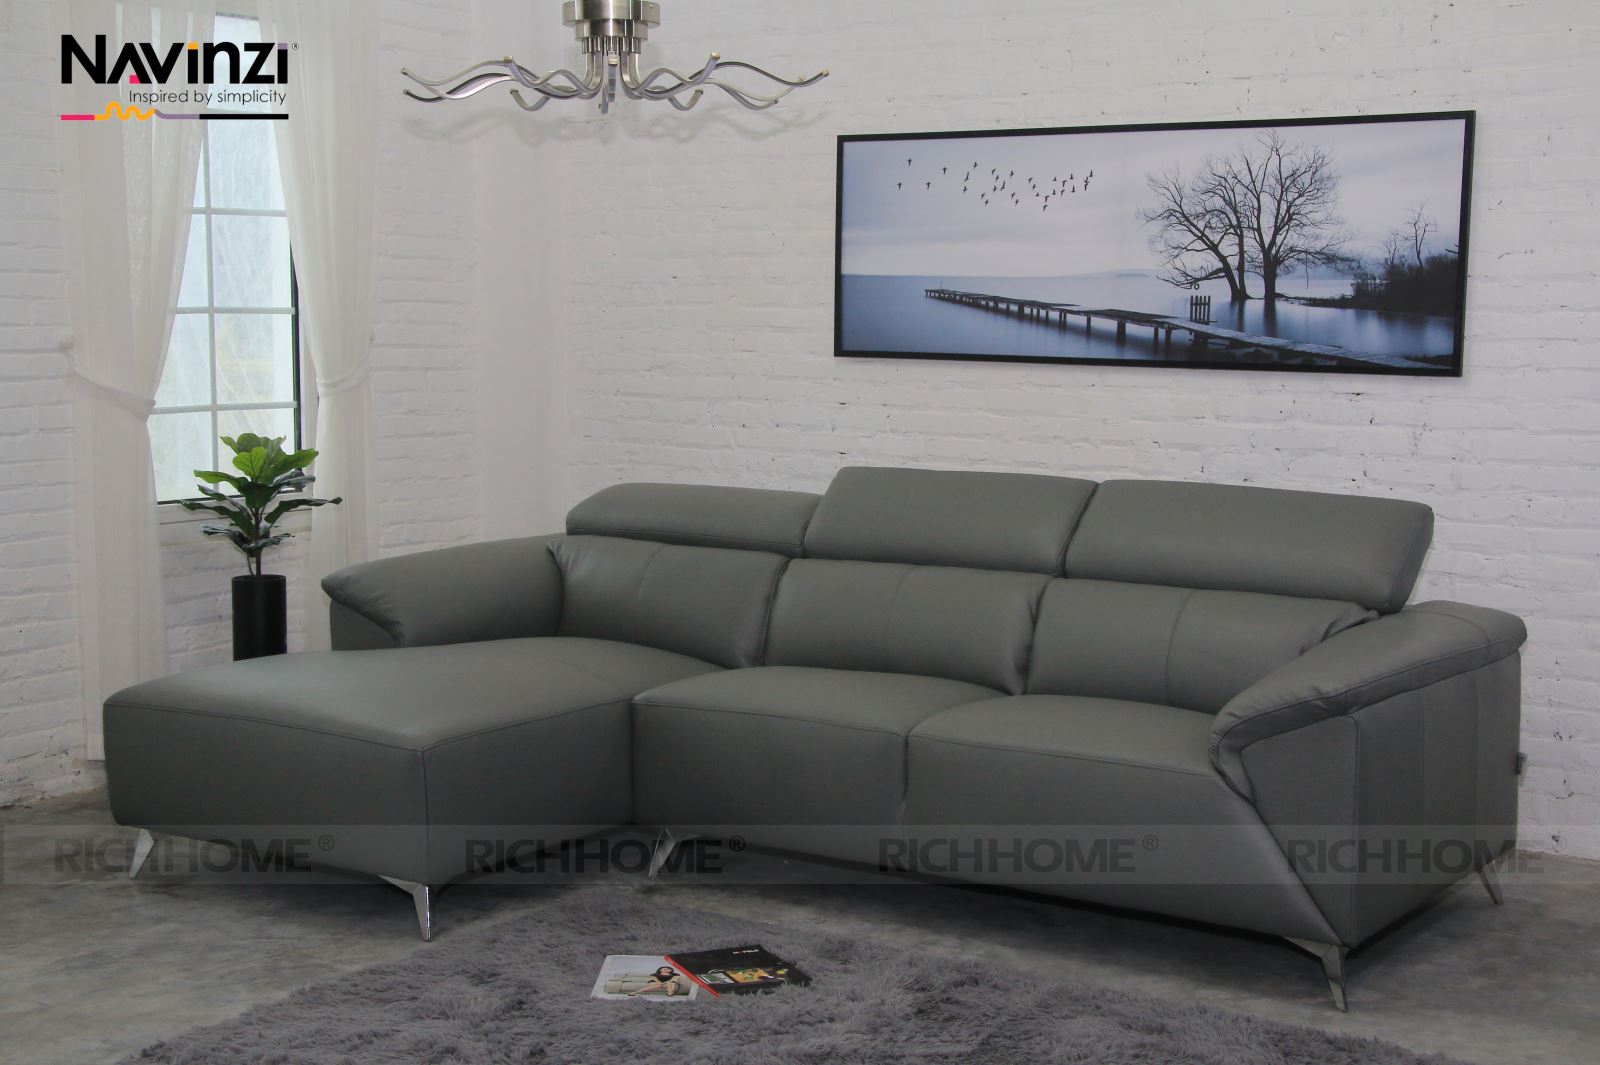 Sofa màu xám dành cho phòng khách đơn giản nhưng sang trọng - Ảnh 2